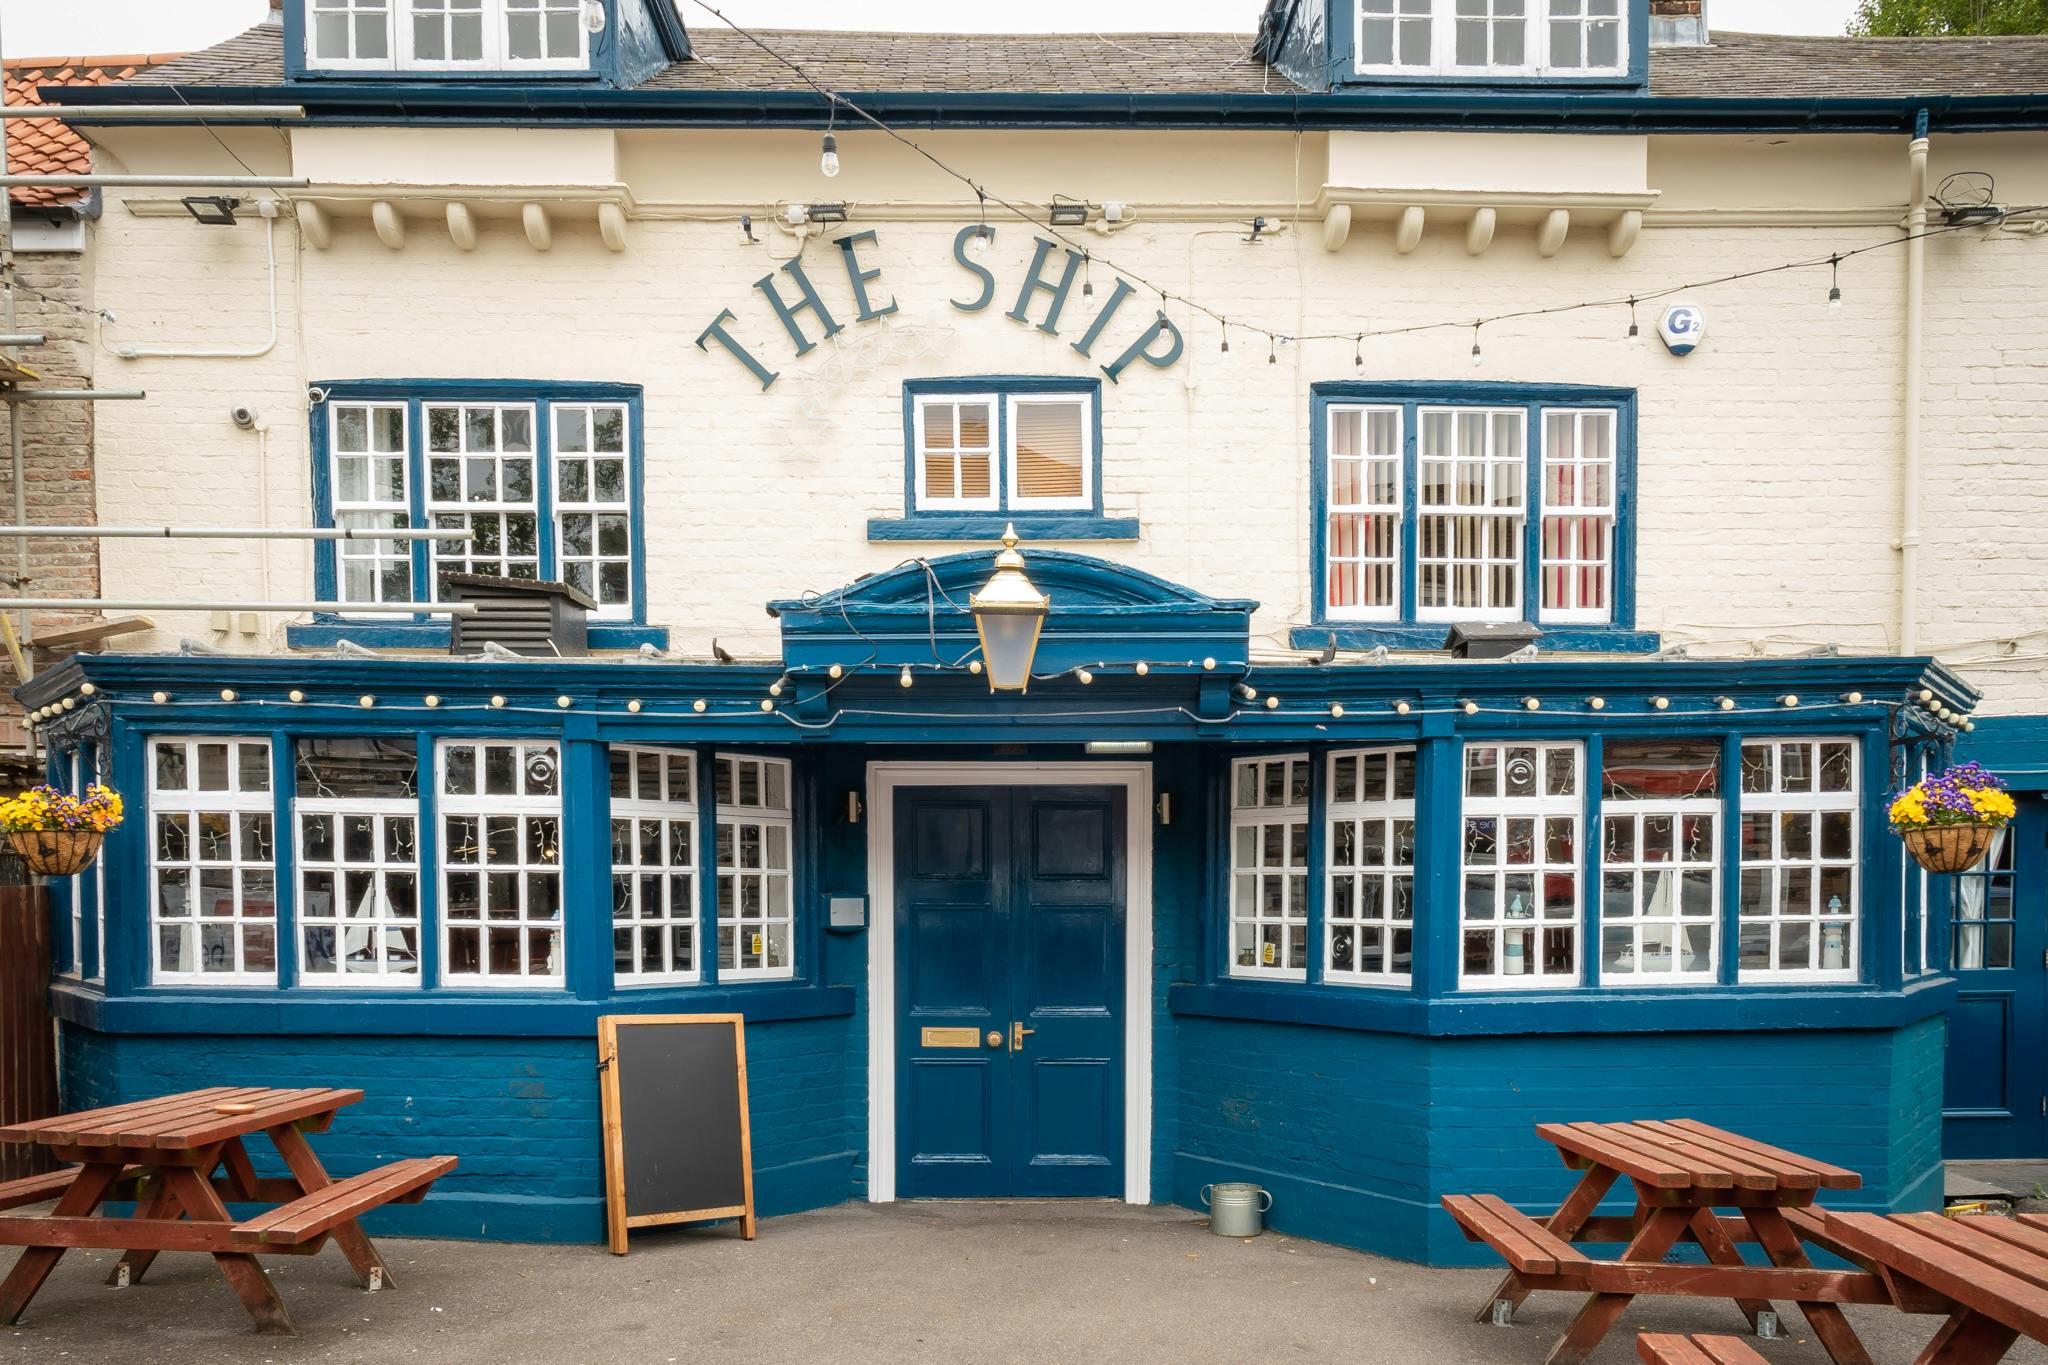 Decorative header image of a pub